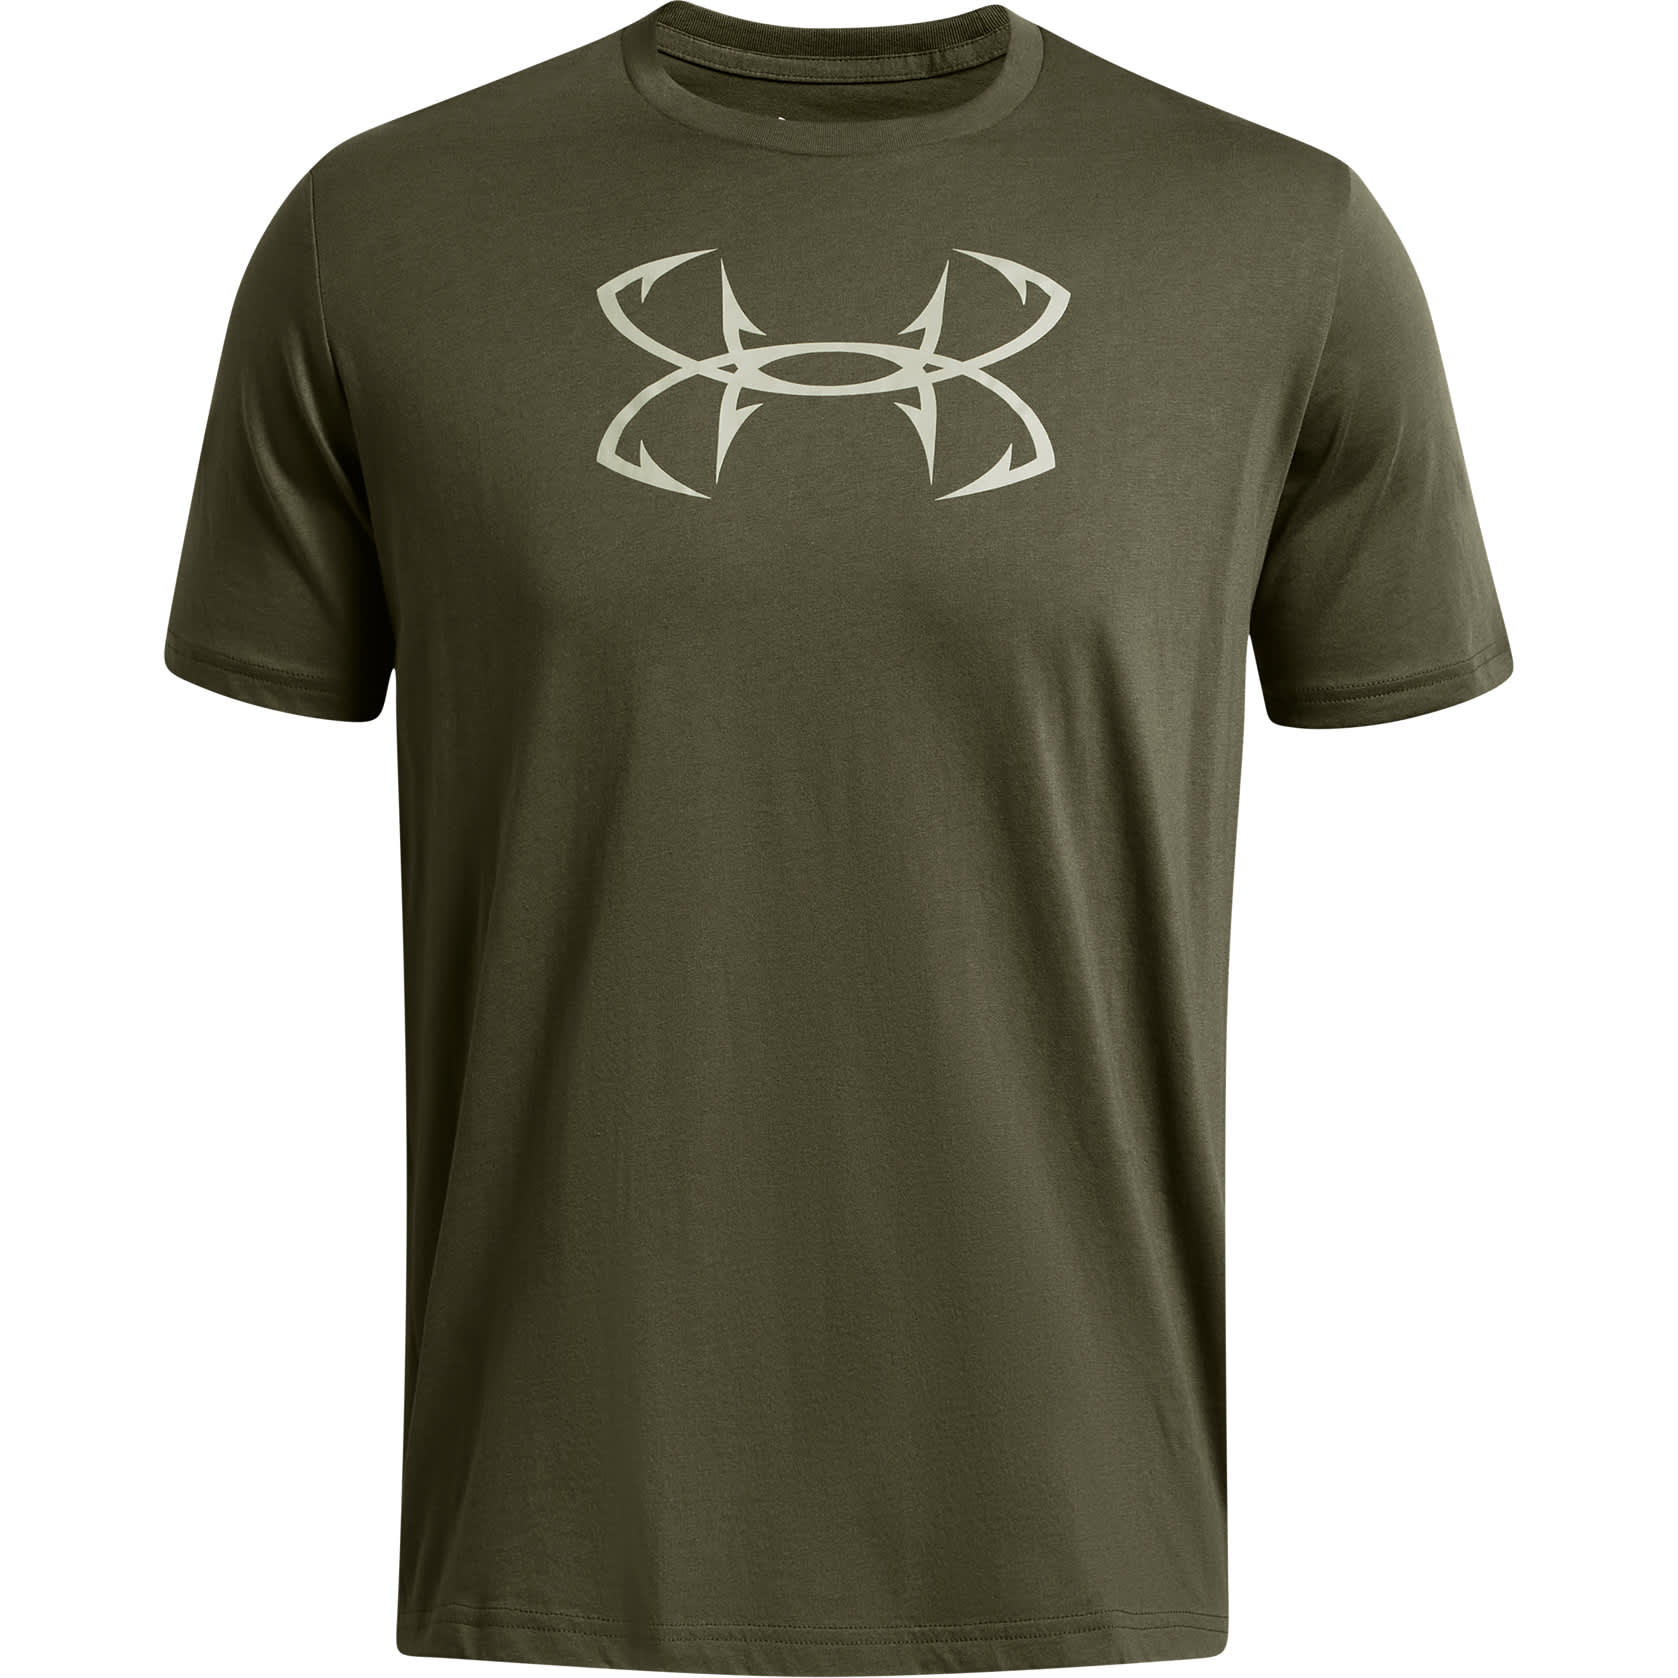 Under Armour Men's Fish Hook Logo T-Shirt - Green, Xl